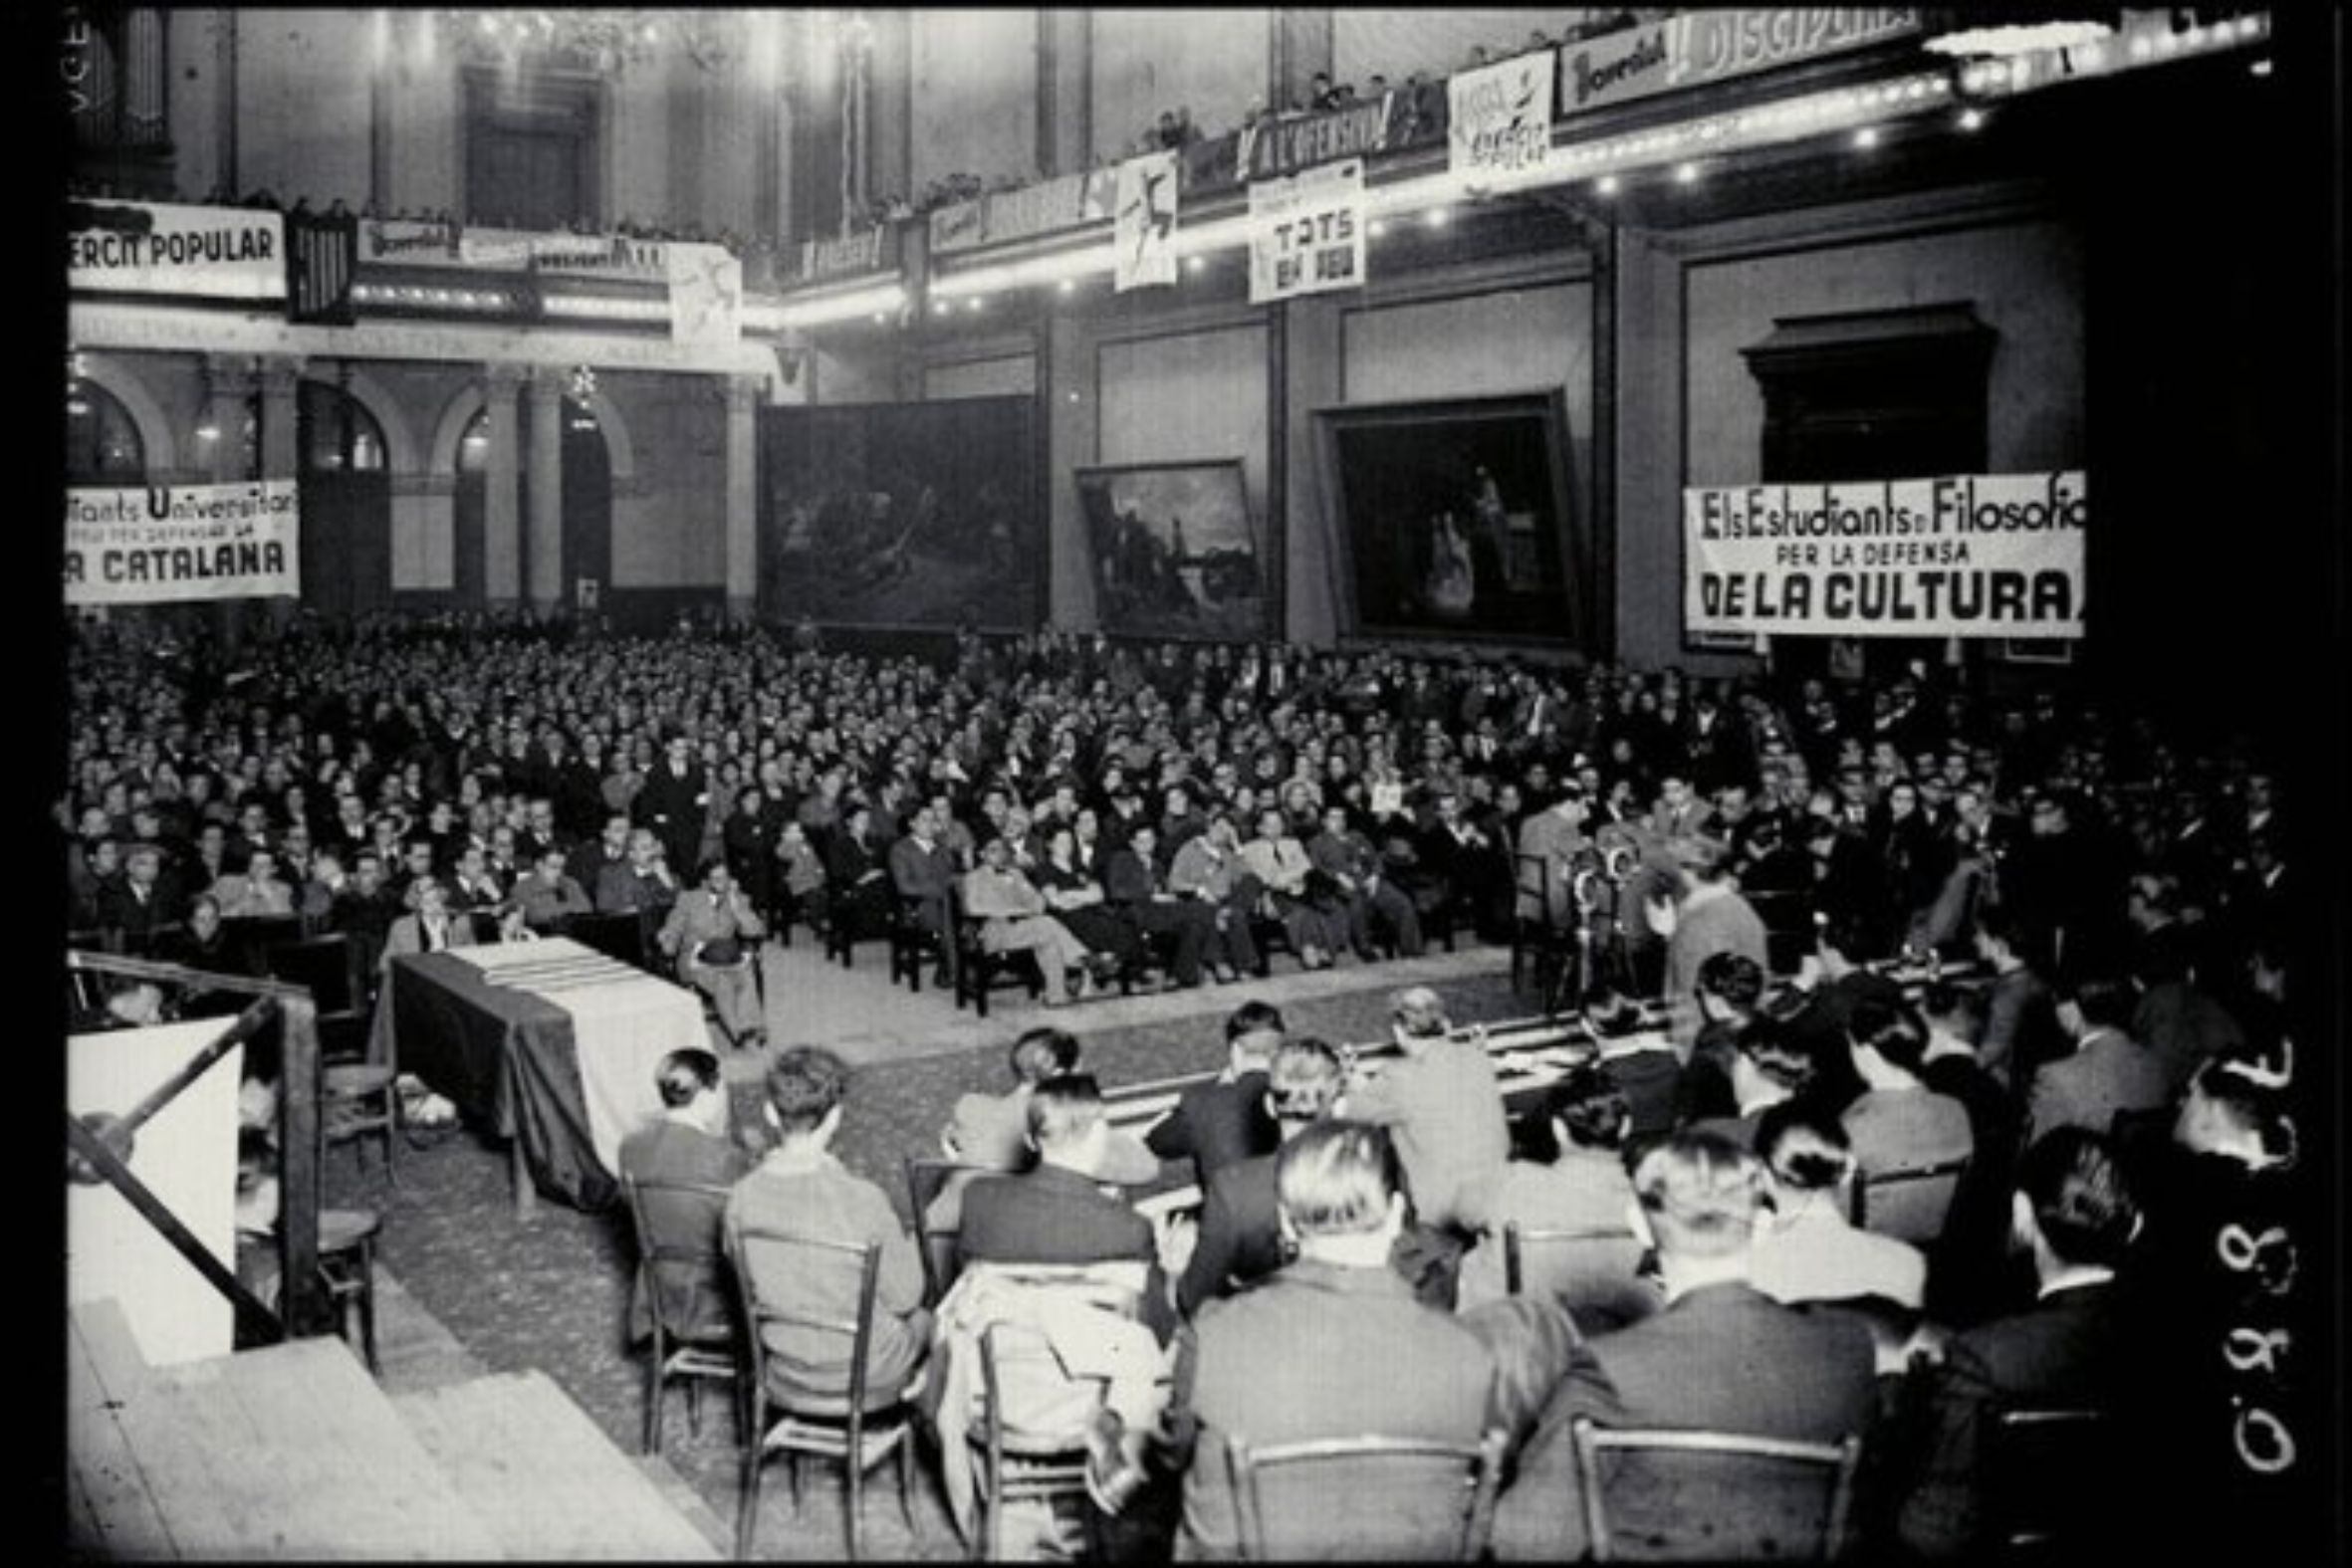 Acte d'intel·lectualitat adreçat a la joventut catalana, organitzat per la FNEC l'any 1937 (fotografia: Josep Maria Sagarra - Arxiu Nacional de Catalunya)